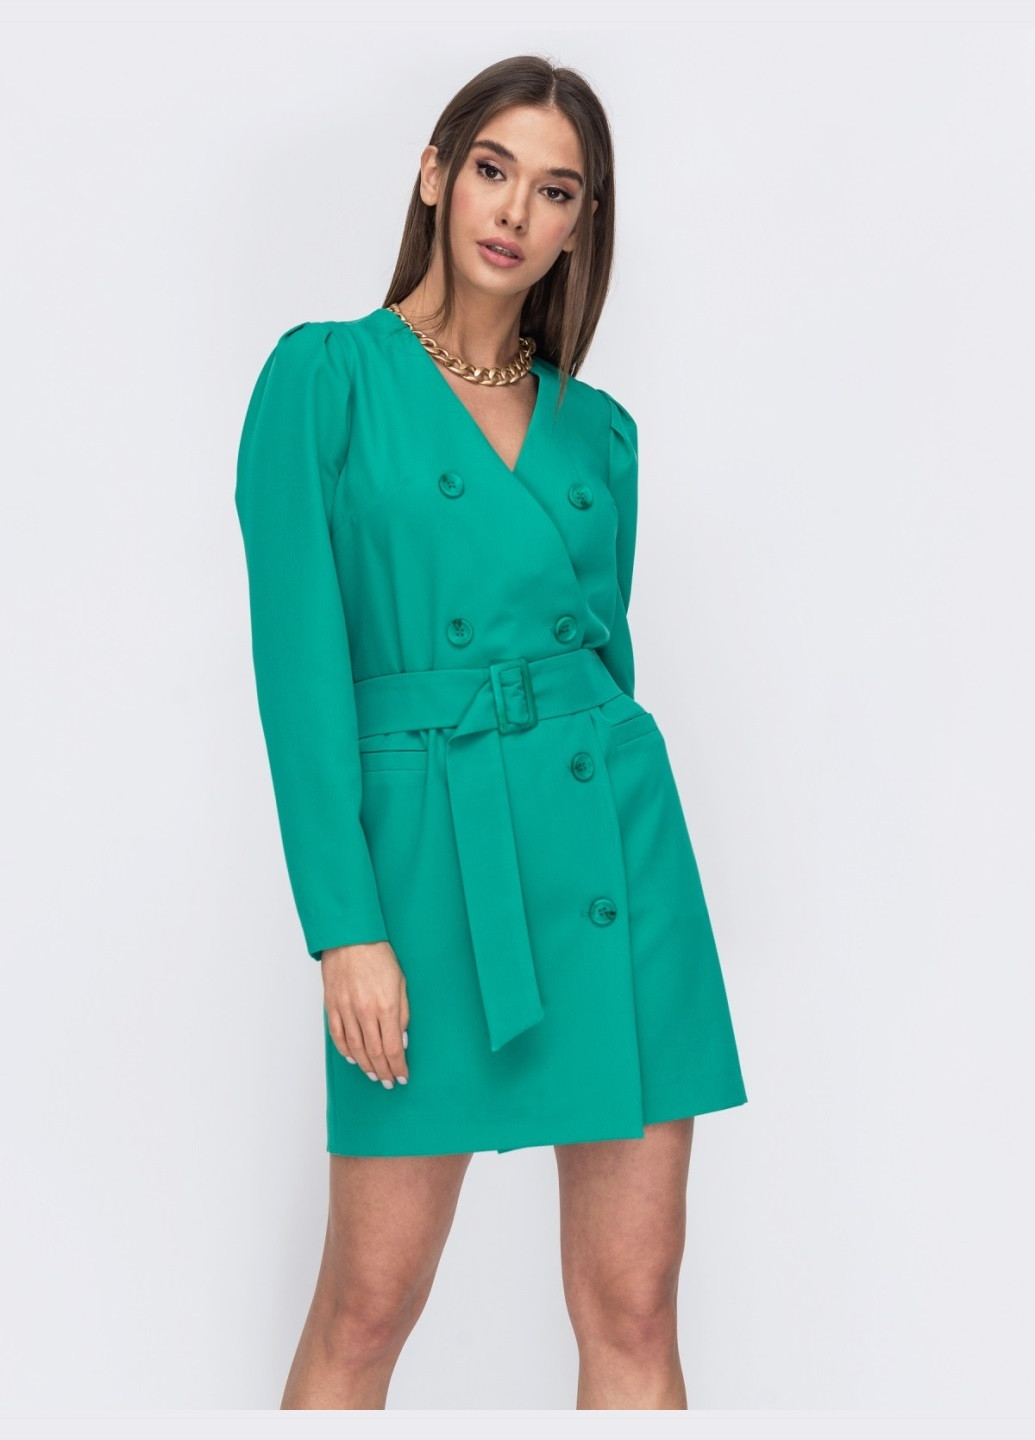 Зелена ділова плаття-піджак бірюзового кольору з широким поясом Dressa однотонна